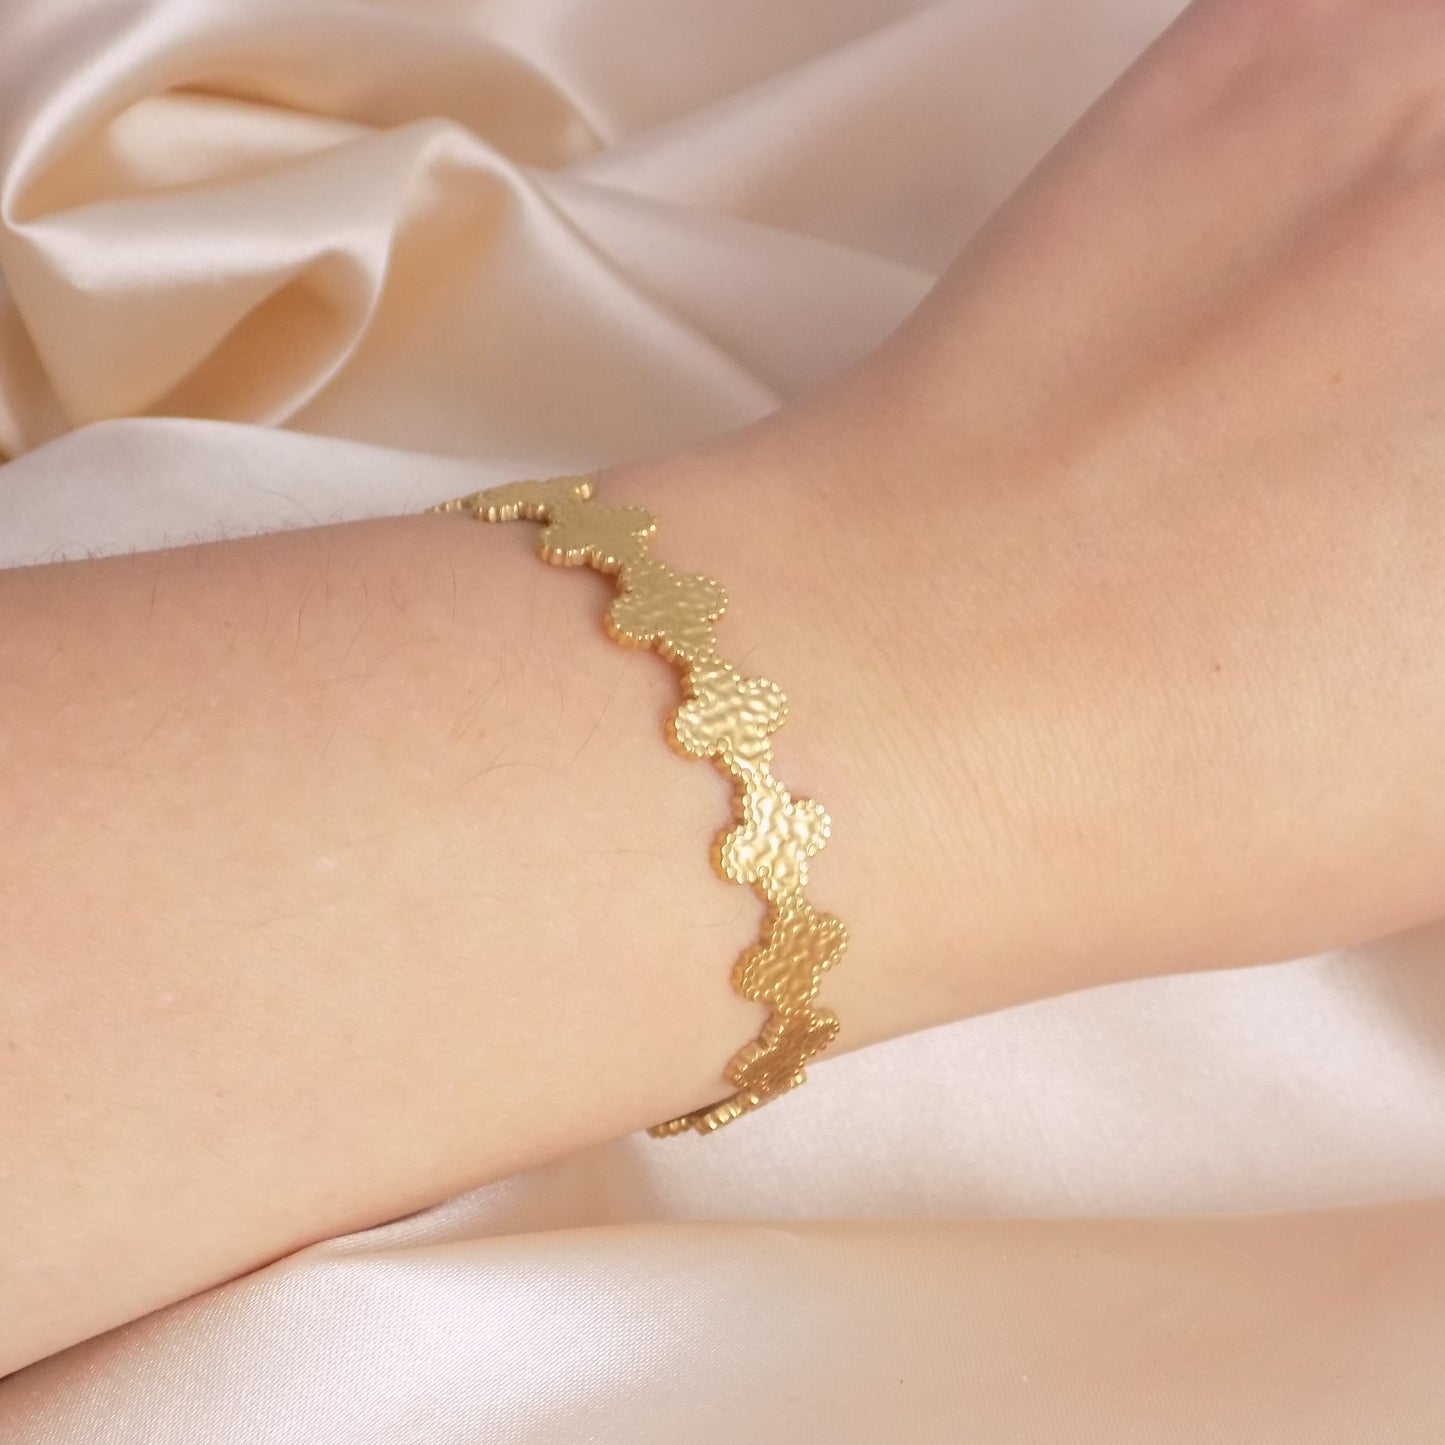 18K Gold Bangle Bracelet Clover Design Adjustable - Stainless Steel